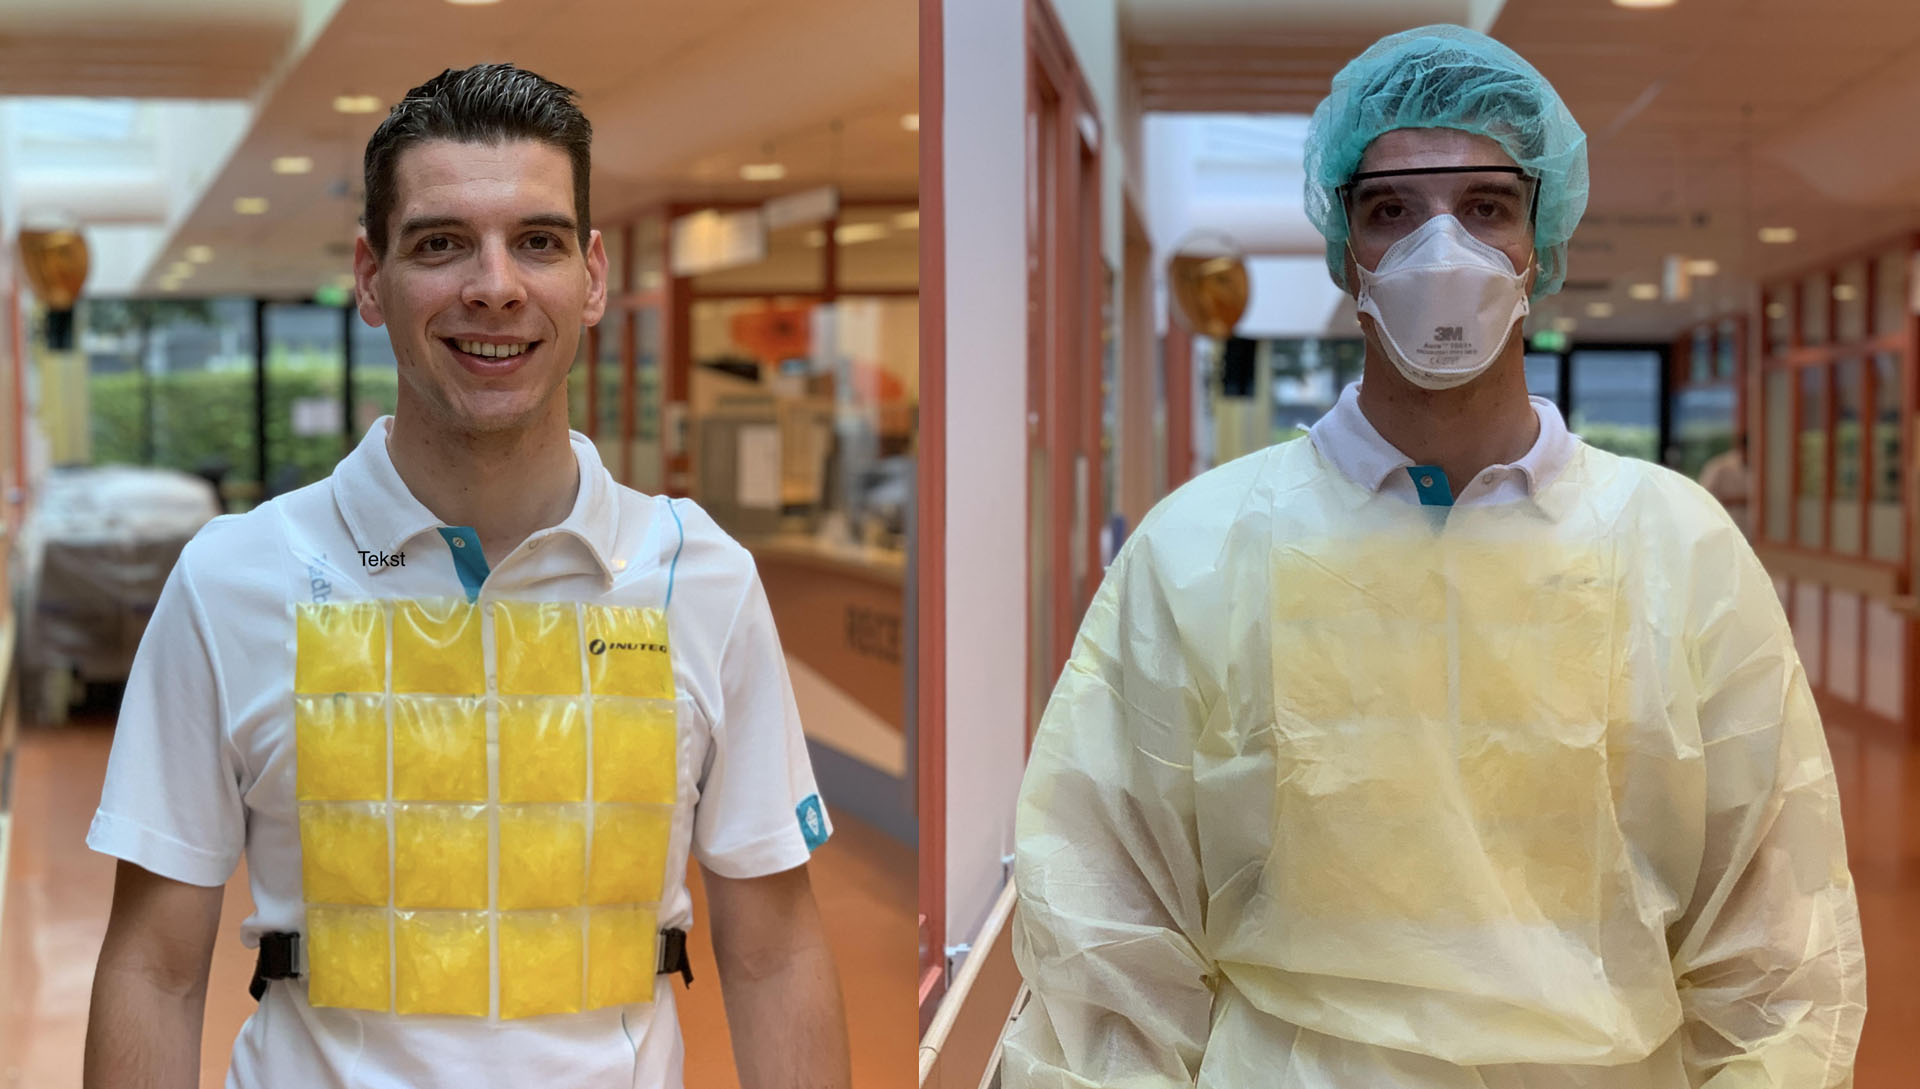 Yannick de Korte - Het koelvest kan over de normale werkkleding worden gedragen (links) of onder de beschermende pakken die tijdens de pandemie nodig waren (rechts).